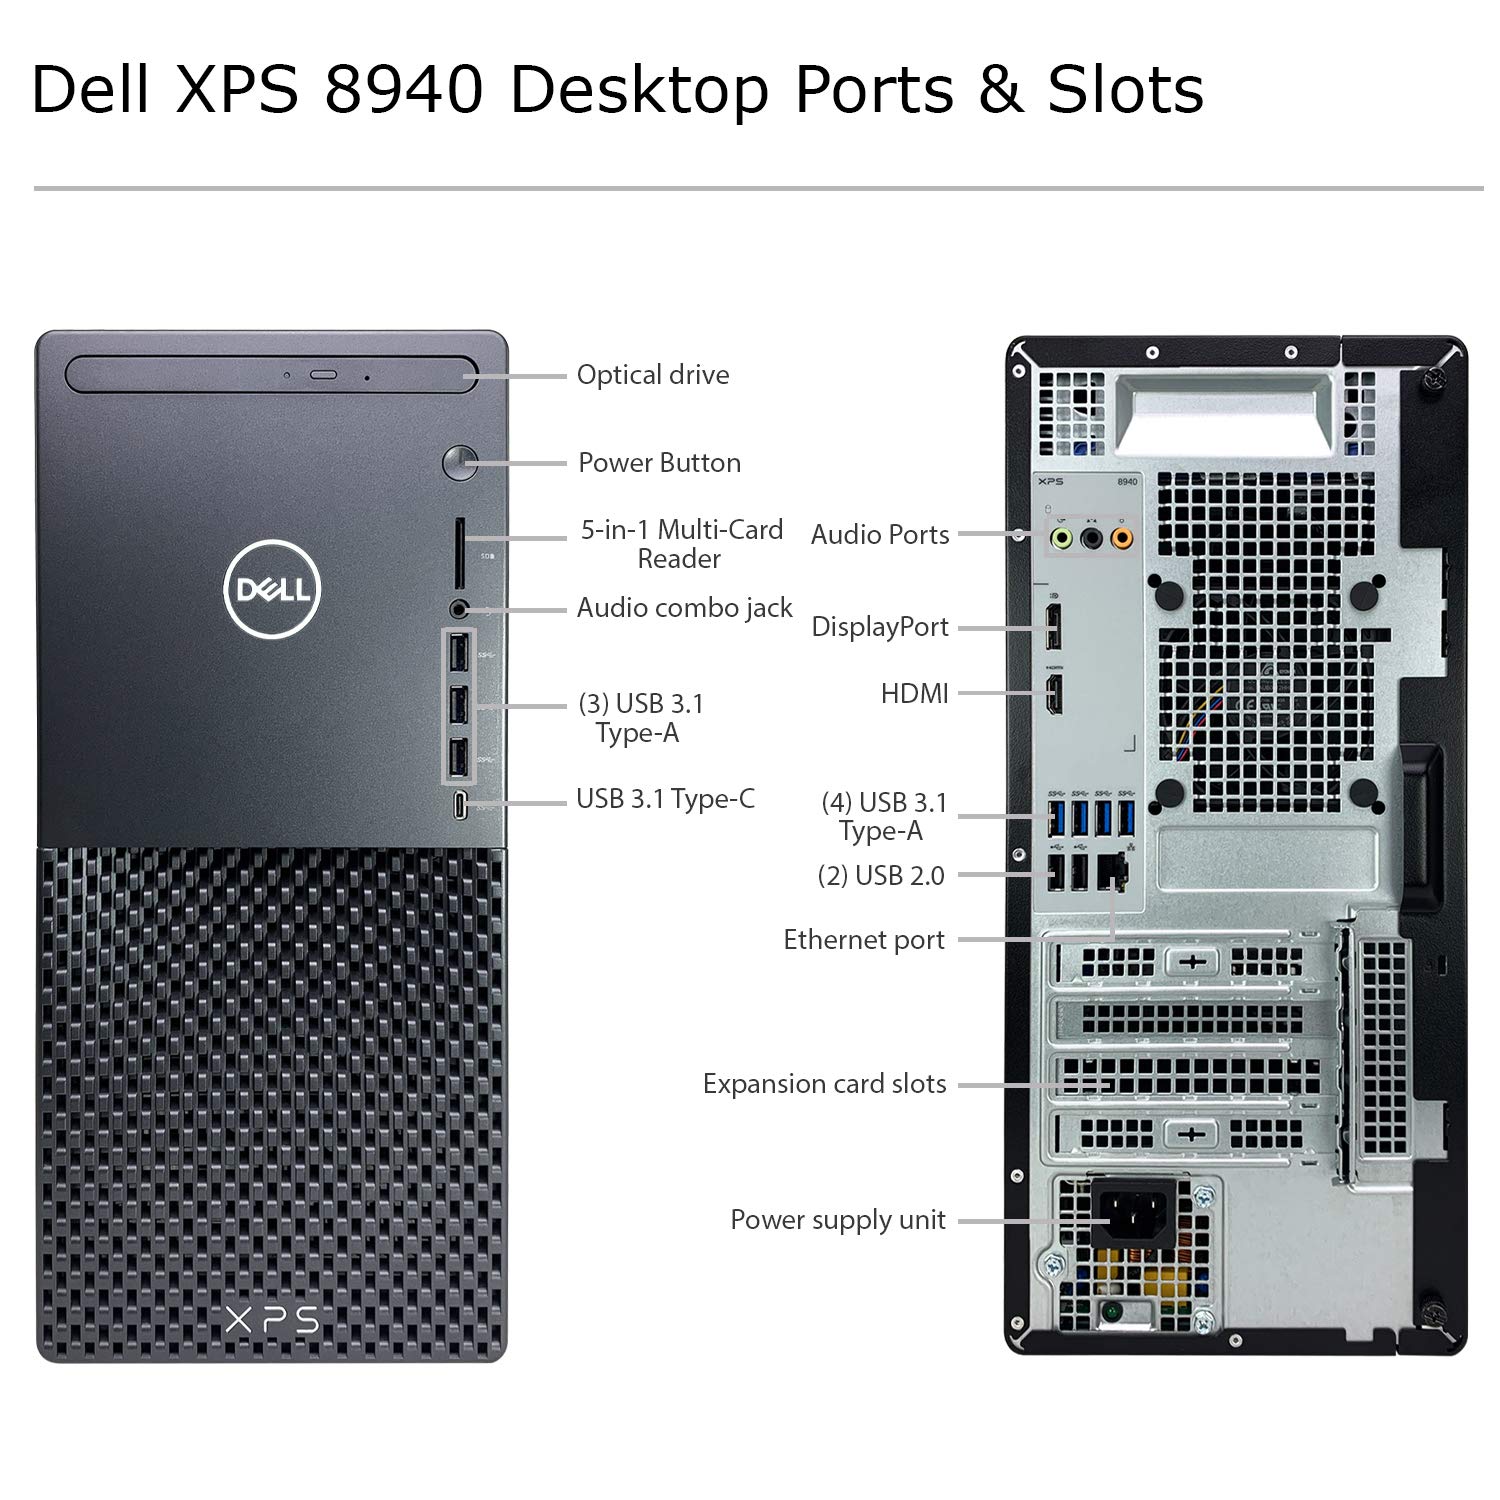 2021 Latest Dell XPS 8940 Desktop - 11th Gen Intel Core i9-11900K up to 5.3 GHz CPU, 16GB RAM, 8TB SSD + 4TB HDD, Intel UHD Graphics 750, Killer Wi-Fi 6, 500W PSU, DVD-RW, Windows 10 (Renewed)